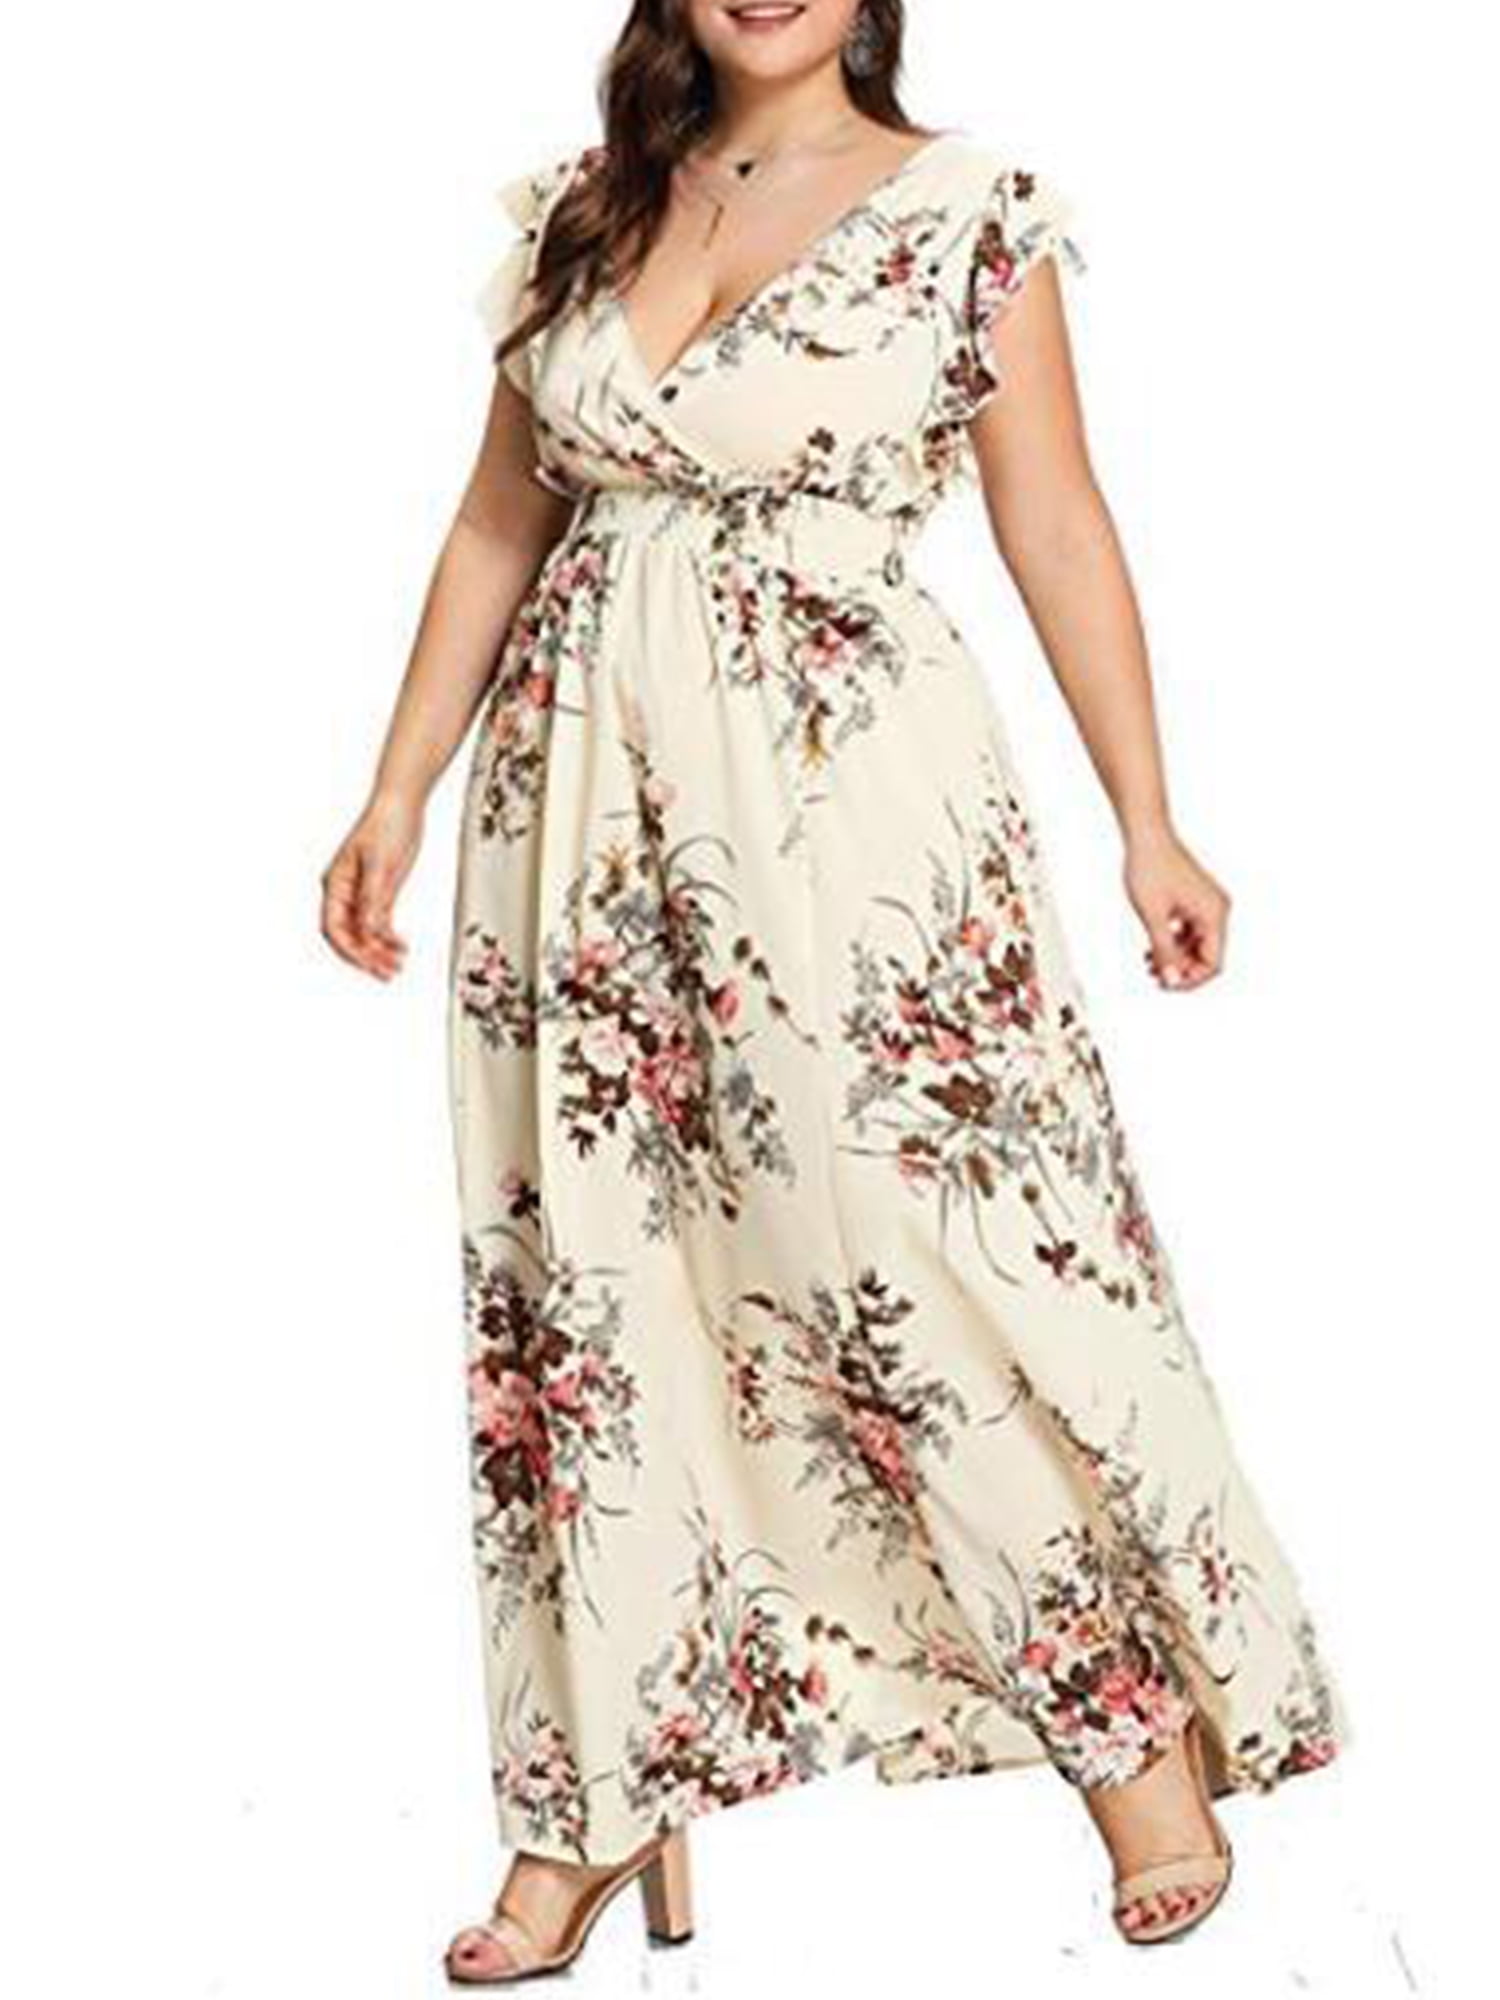 Dresses Loose Plus Size Party Sundress Floral Evening Fashion Women's Long Dress 